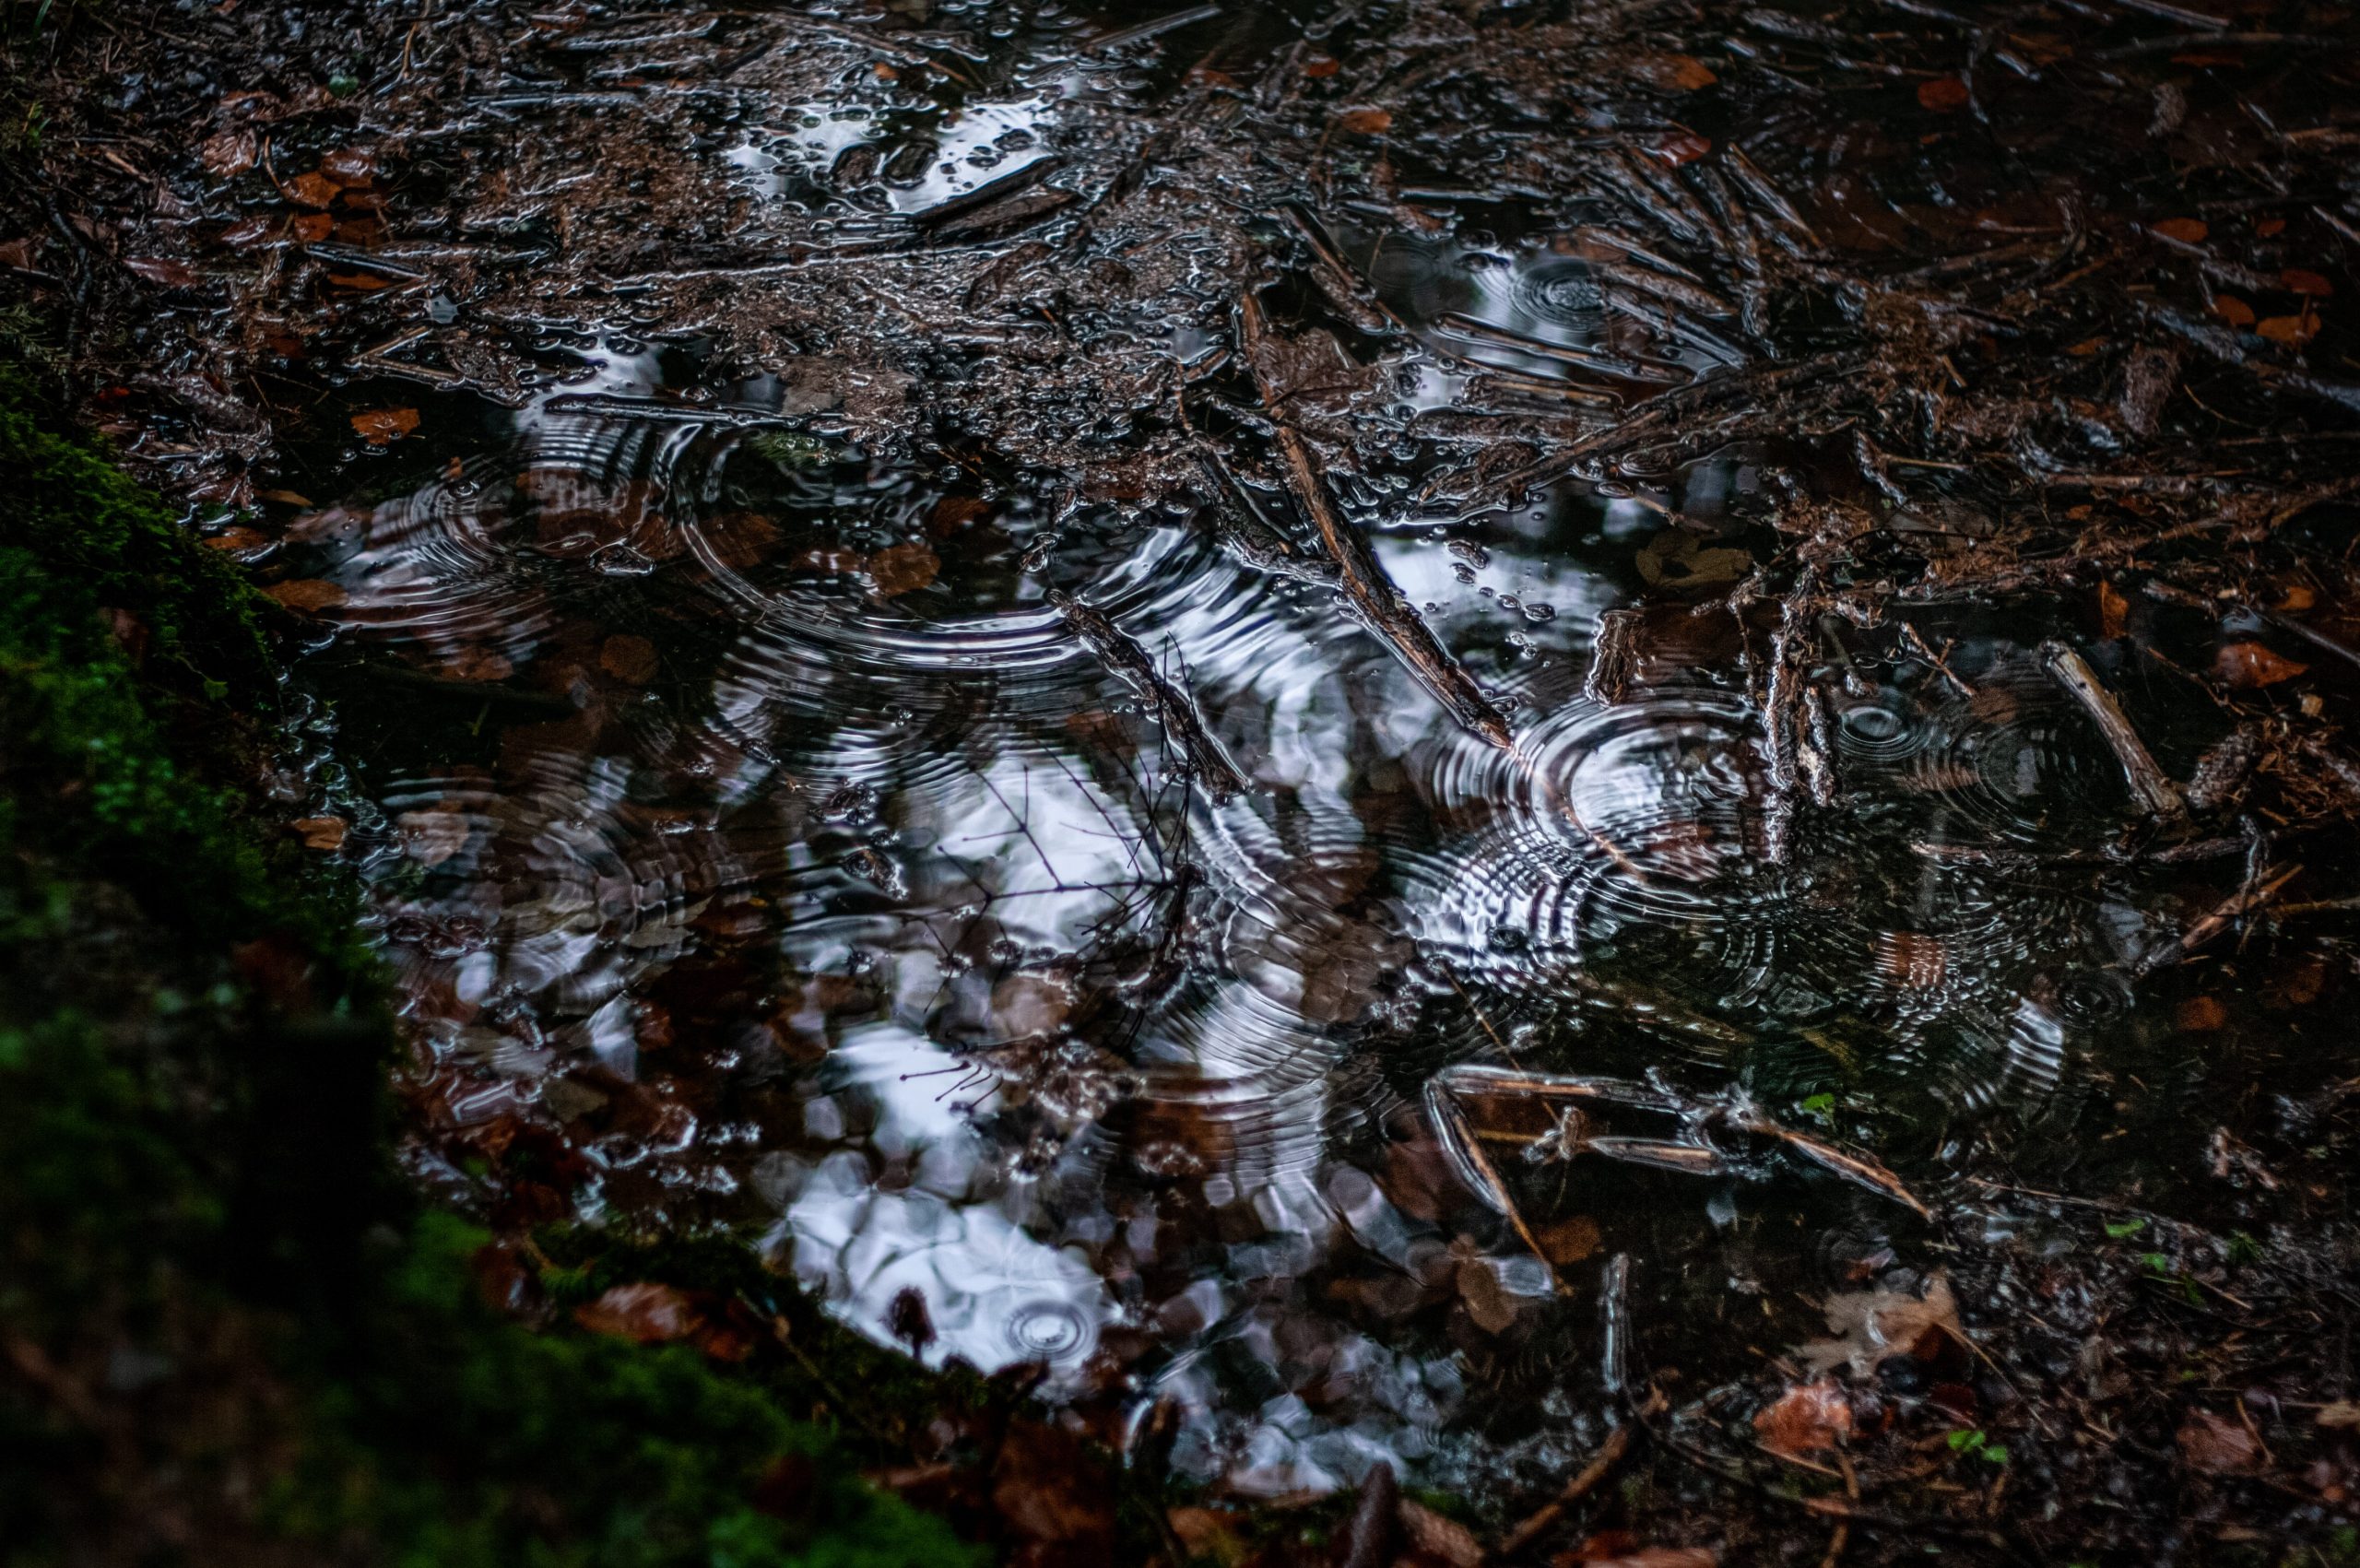 Photographie d'une flaque d'eau sur le sol de la forêt. La flaque présente plusieurs petites ondulations et est remplie de feuilles brunes et d'aiguilles de pin.